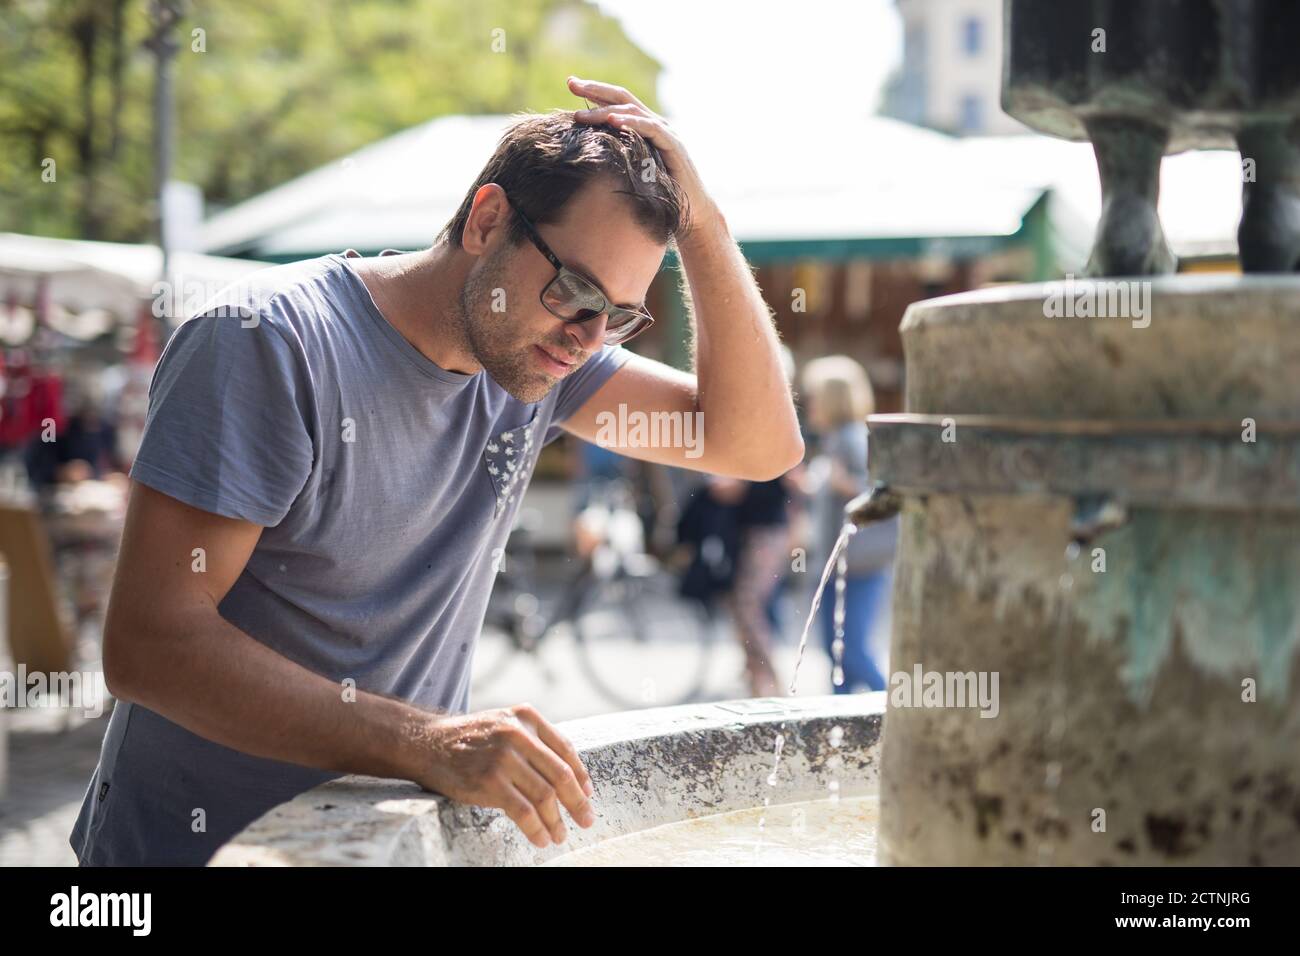 Junge Casual cucasian Mann erfrischt sich mit Wasser aus der Öffentlichkeit Stadtbrunnen an einem heißen Sommertag Stockfoto